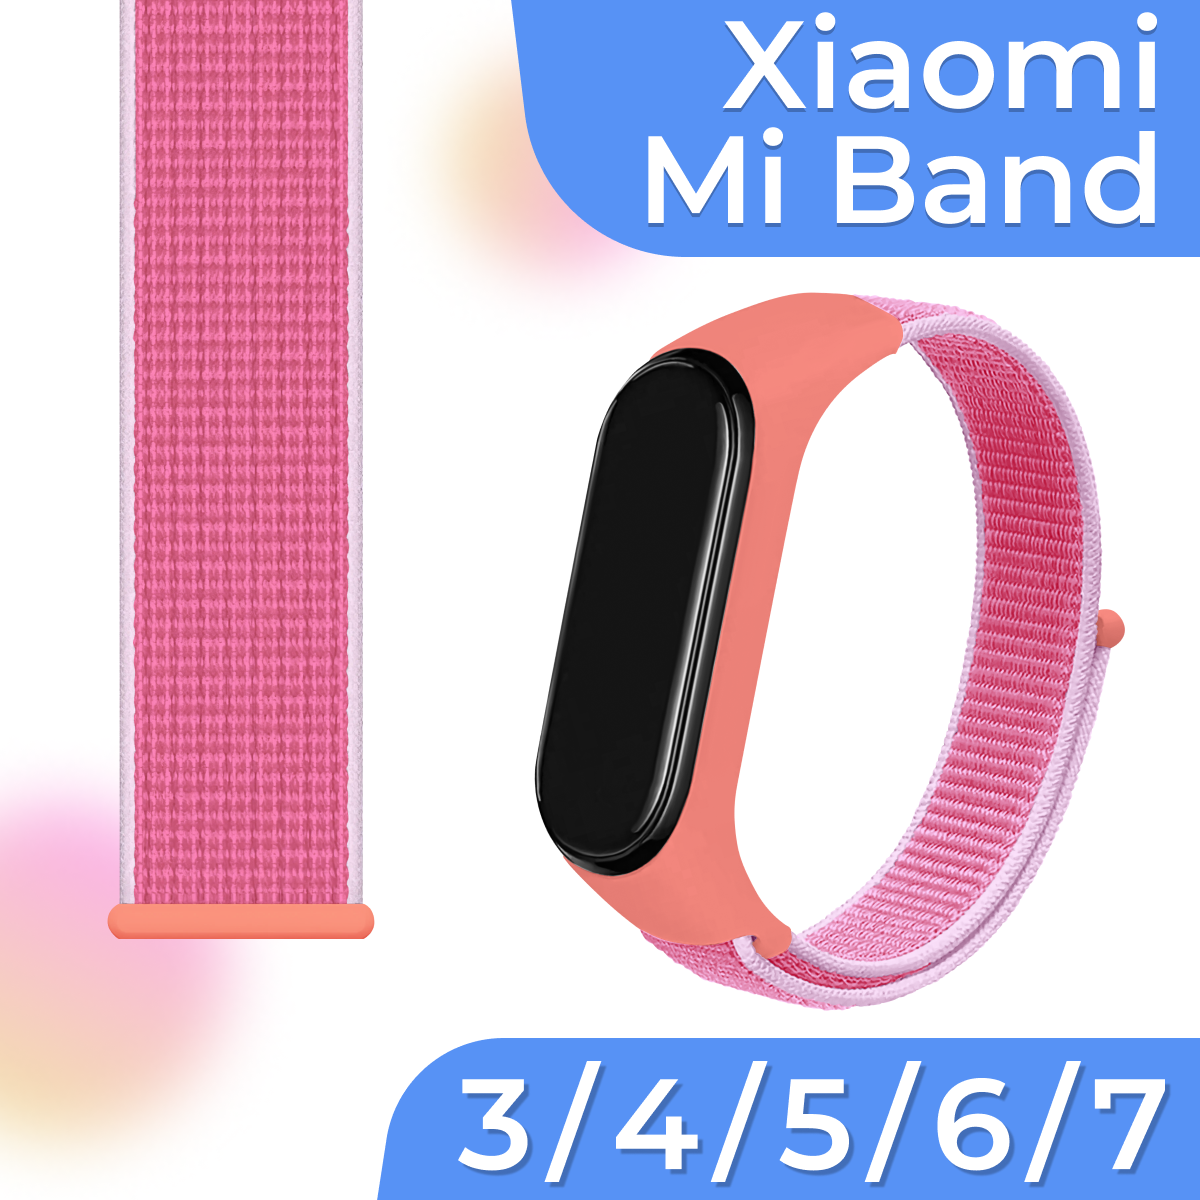 Нейлоновый браслет для умных смарт часов Xiaomi Mi Band 3, 4, 5, 6, 7 / Тканевый ремешок для фитнес трекера Сяоми Ми Бэнд 3, 4, 5, 6, 7 / Розовый